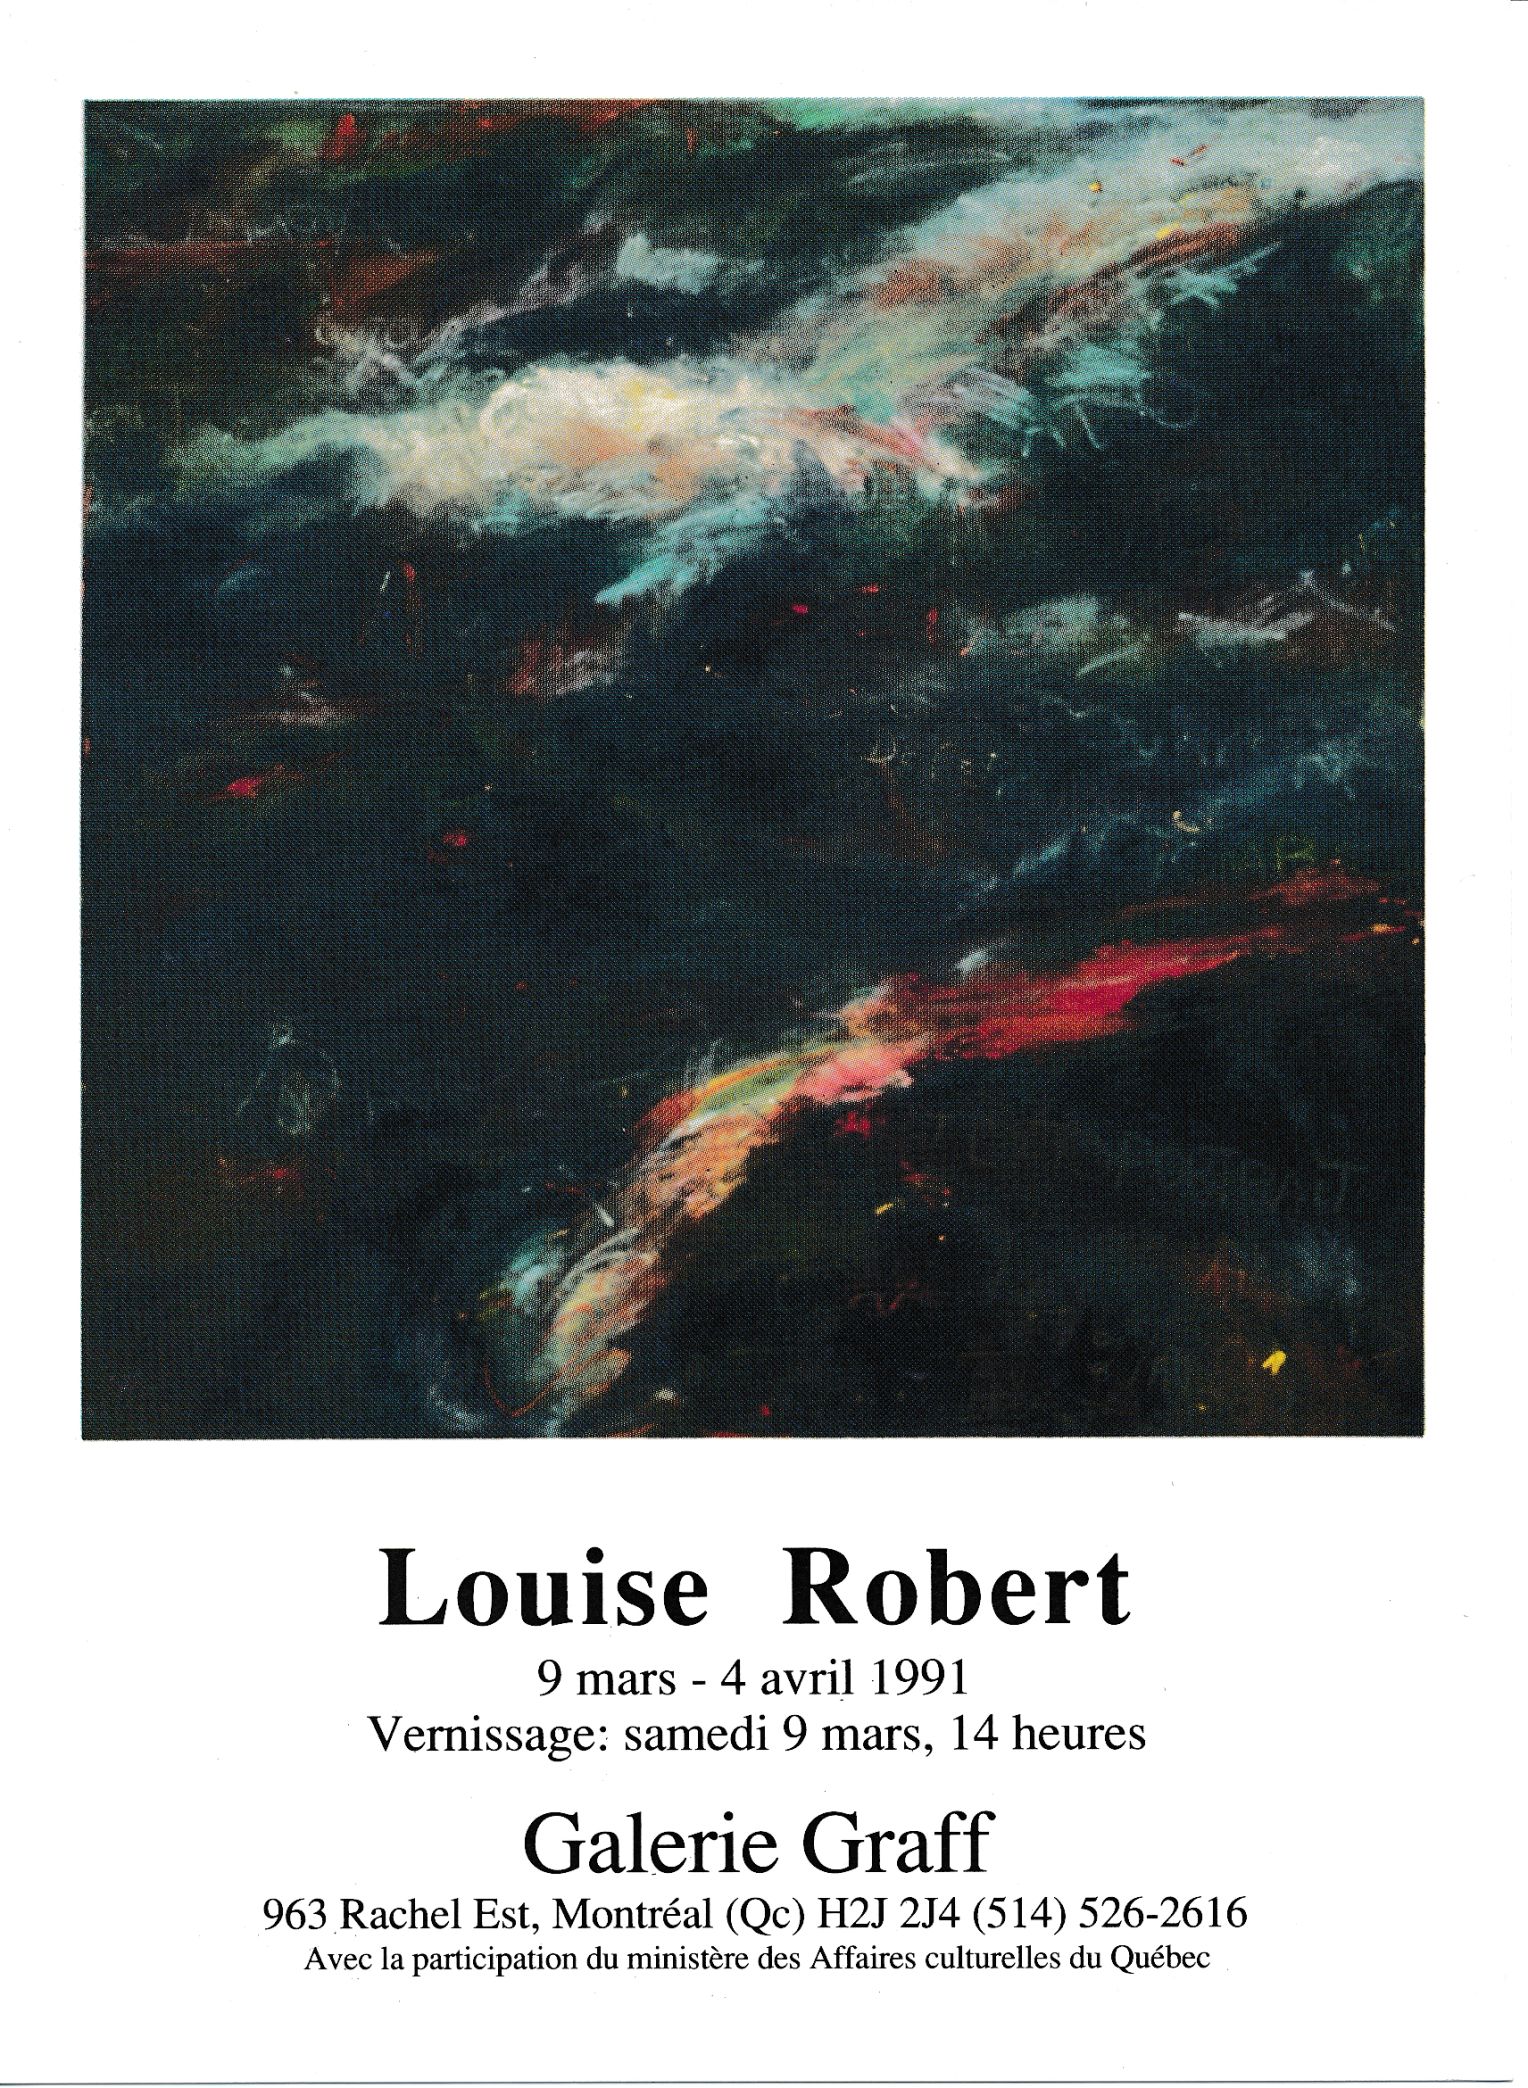 Carton d’invitation de l’exposition Louise Robert, Galerie Graff, Montréal, 1991.